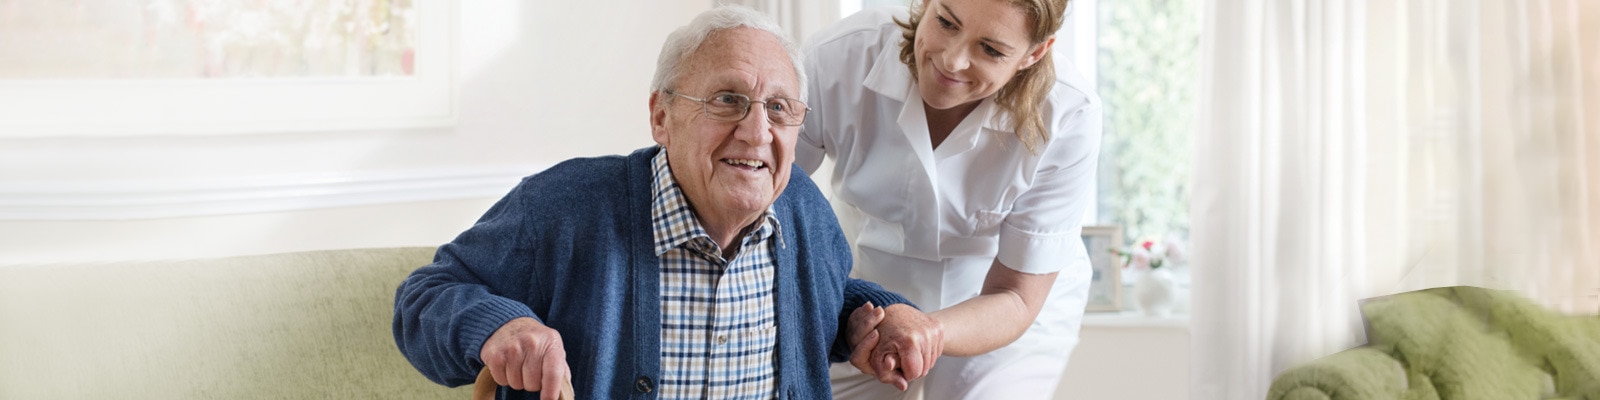 Un soignant en blouse blanche aide un homme âgé à s’asseoir